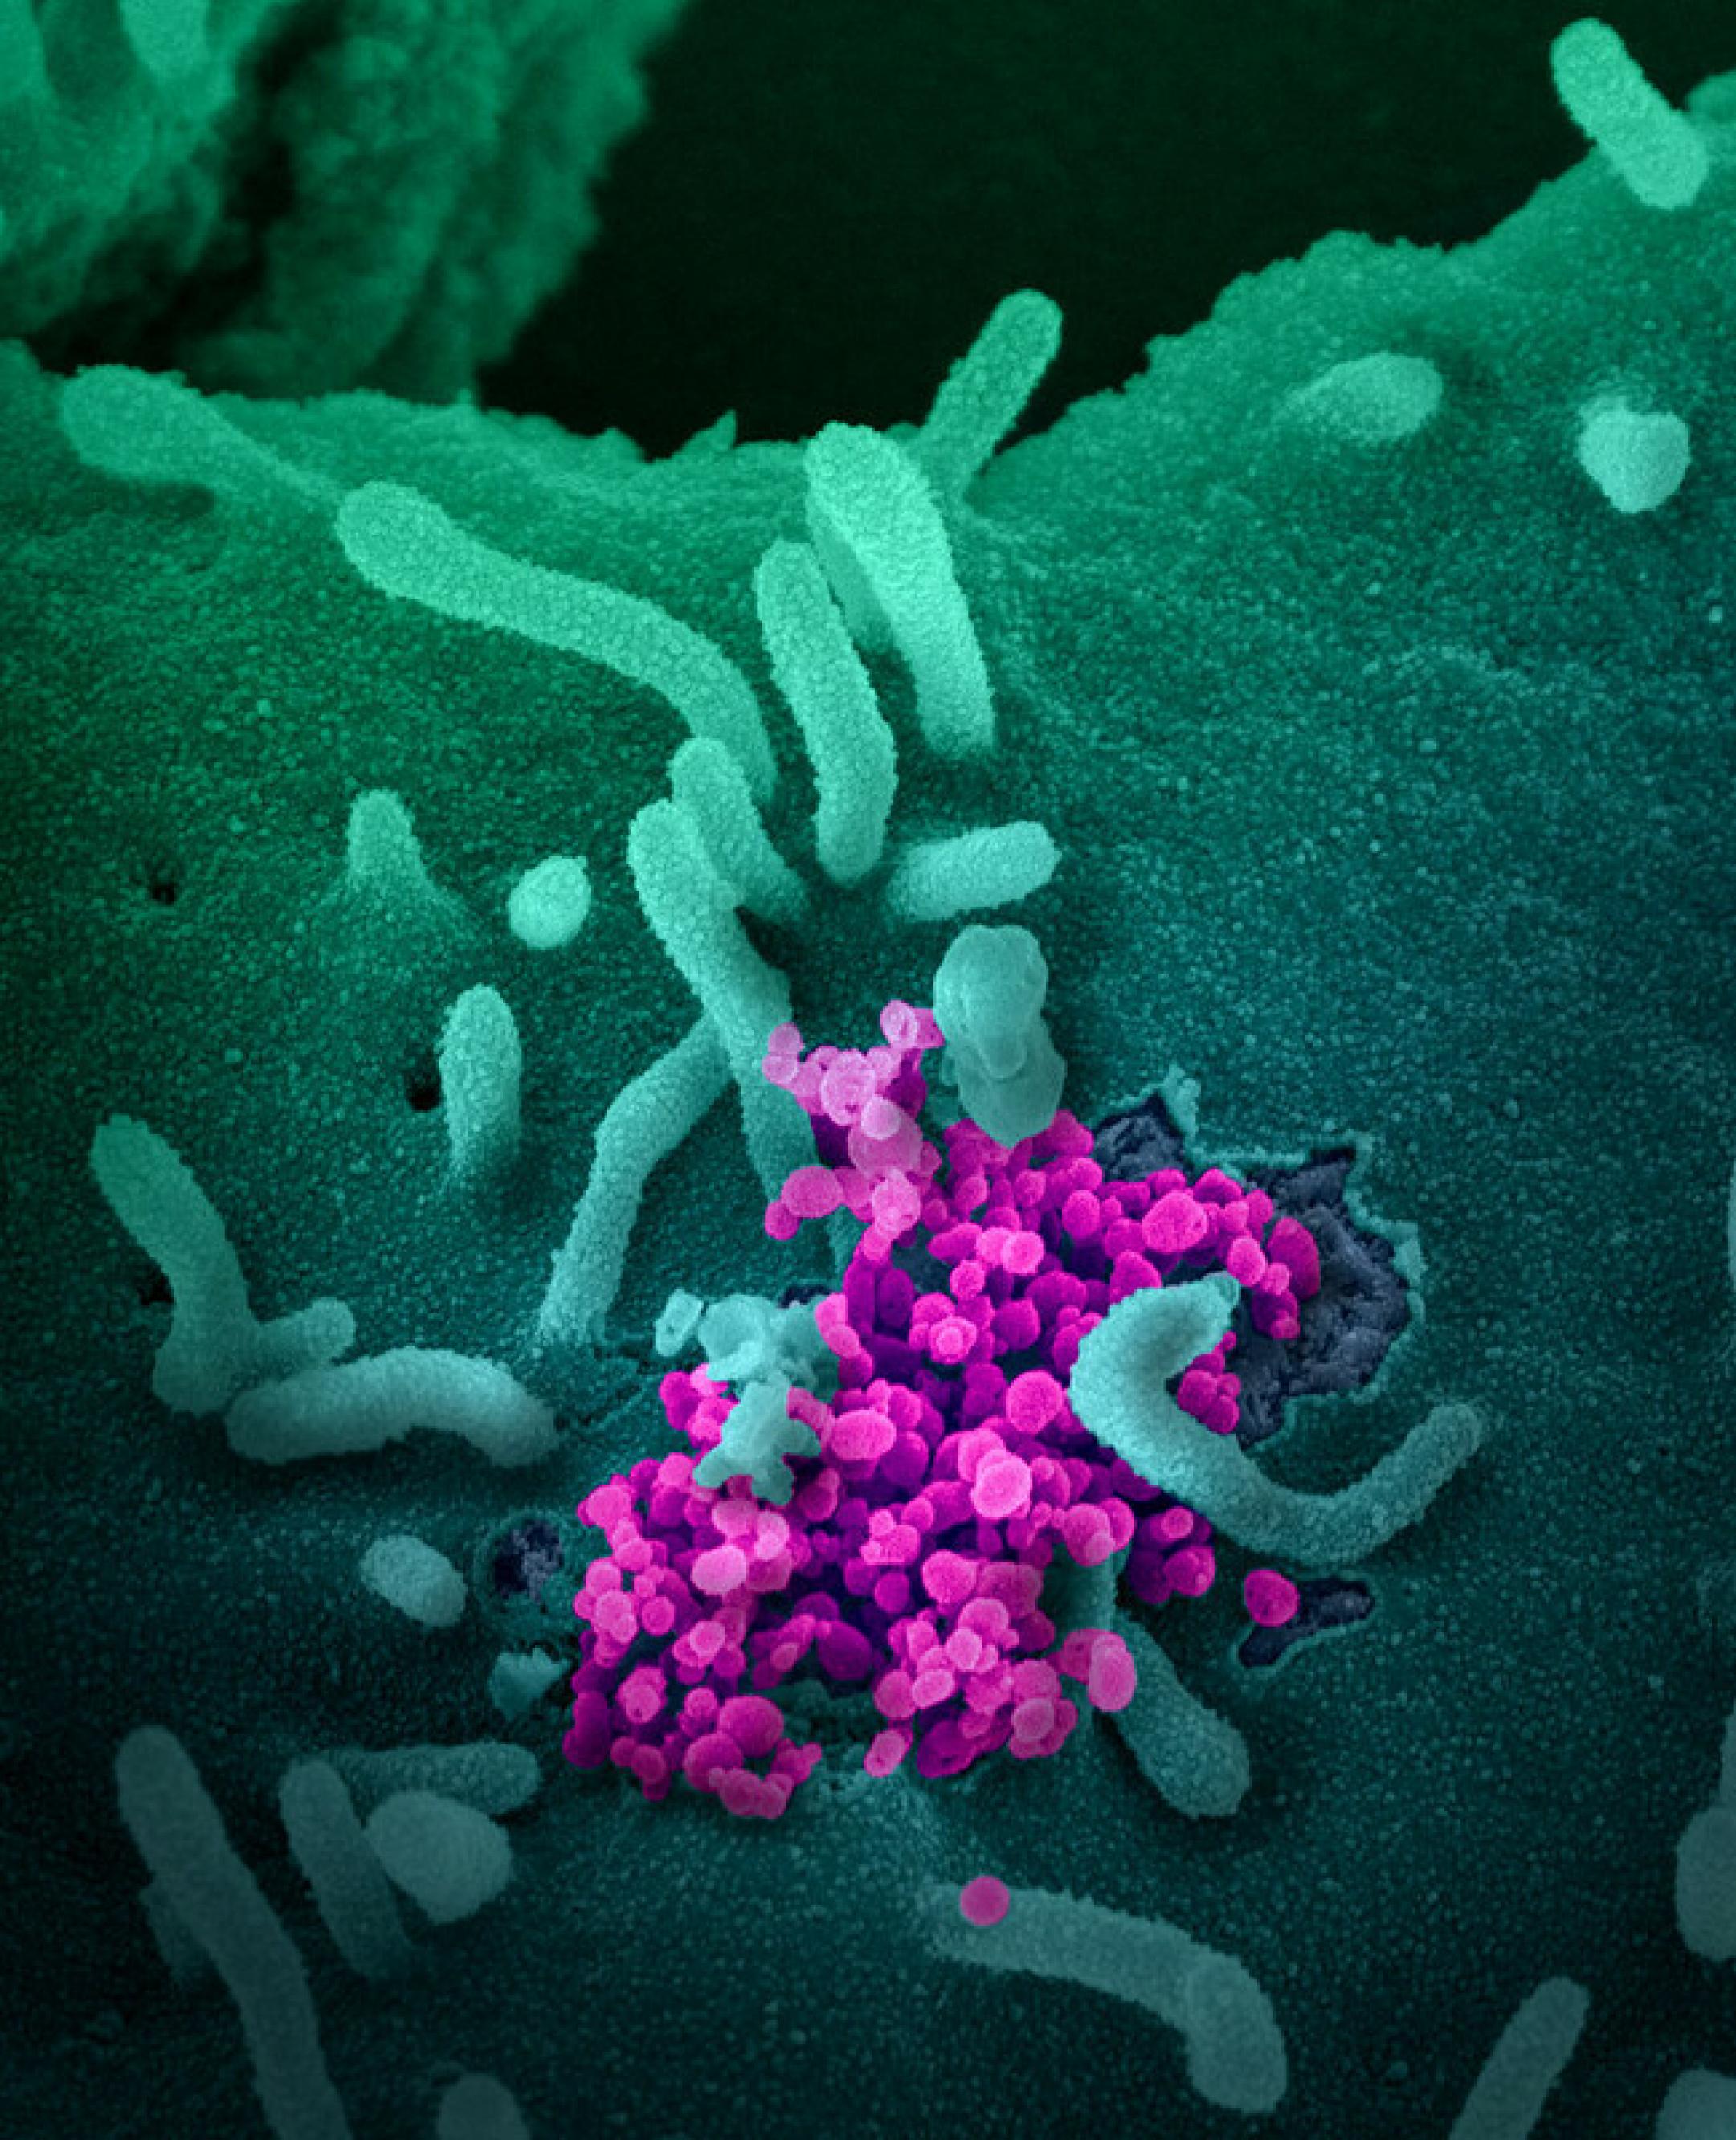 Elektronenmikroskopische Aufnahme von Sars-CoV-2, dem Erreger von Covid-19. Die Viruspartikel sind violett, die infizierten Zellen grün angefärbt.